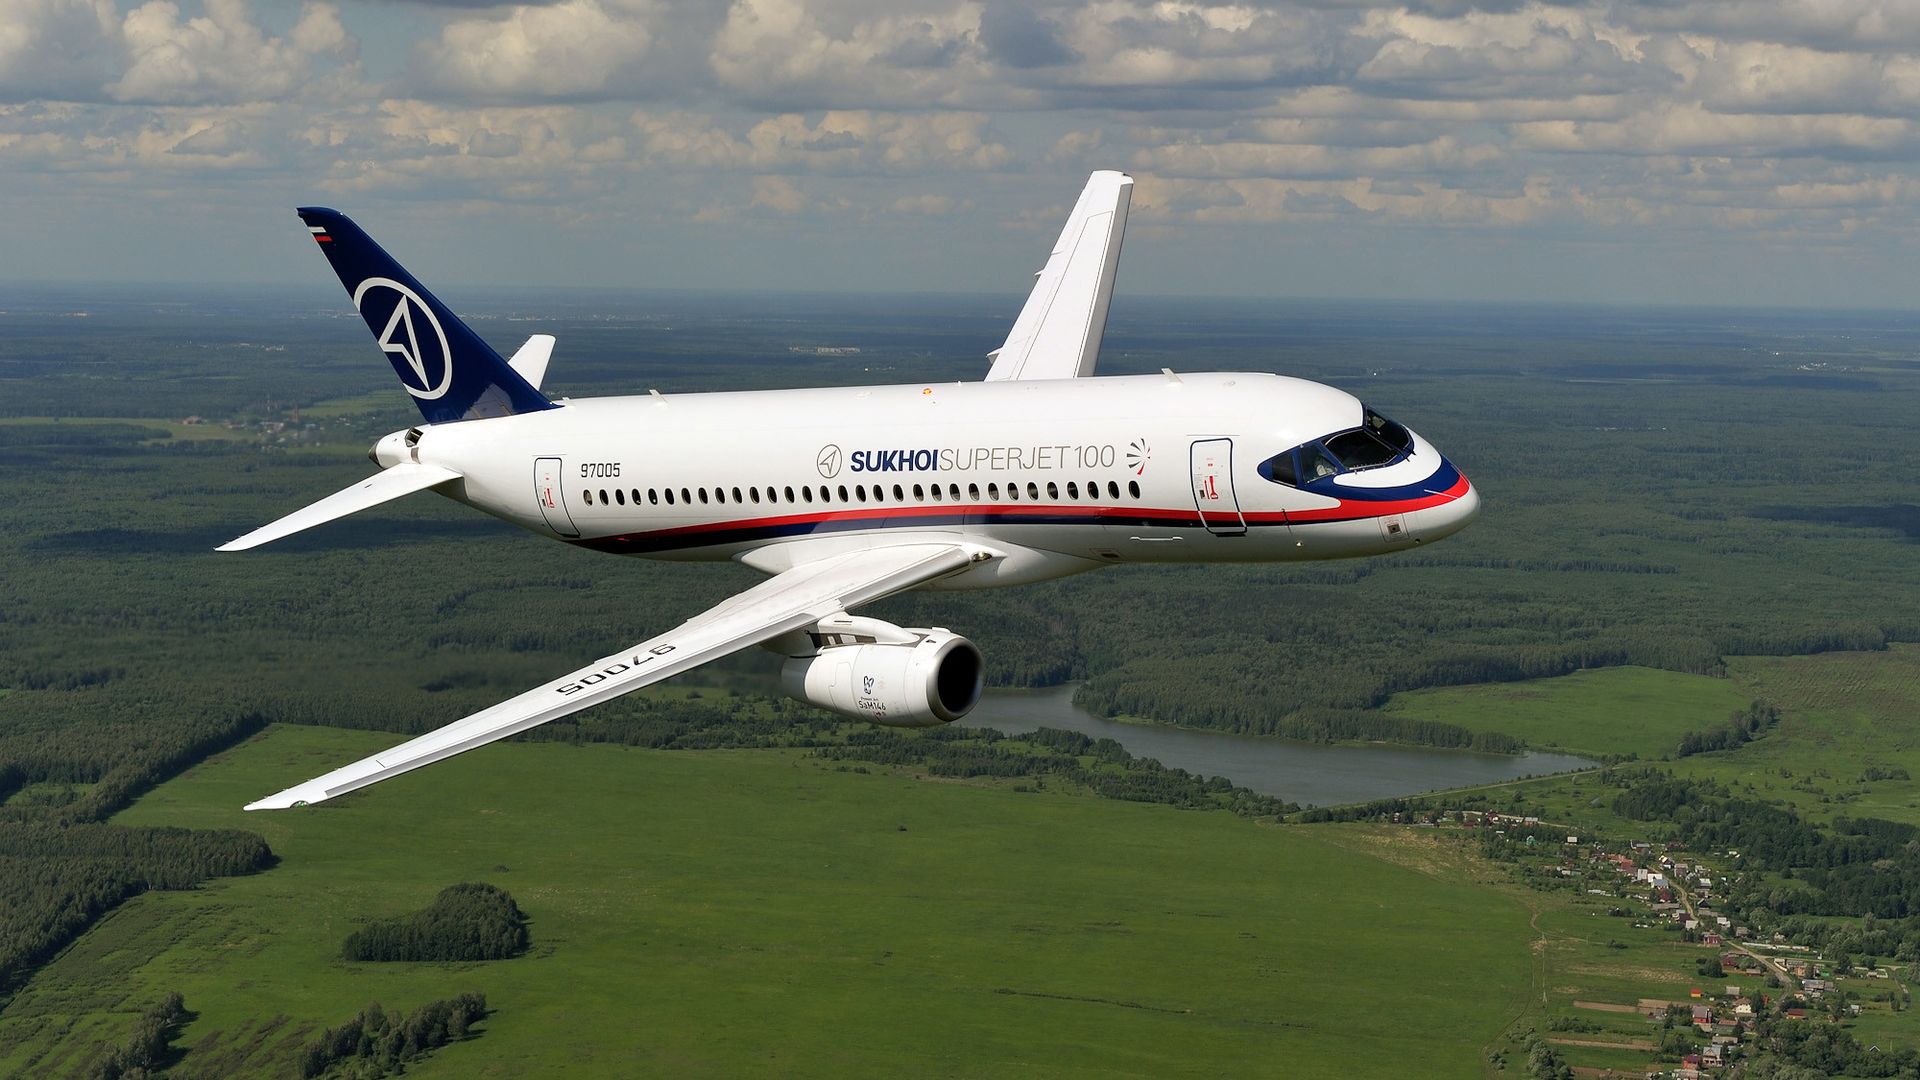 Гусаров: самолеты SSJ New помешают Западу перекрыть России кислород в сфере авиастроения